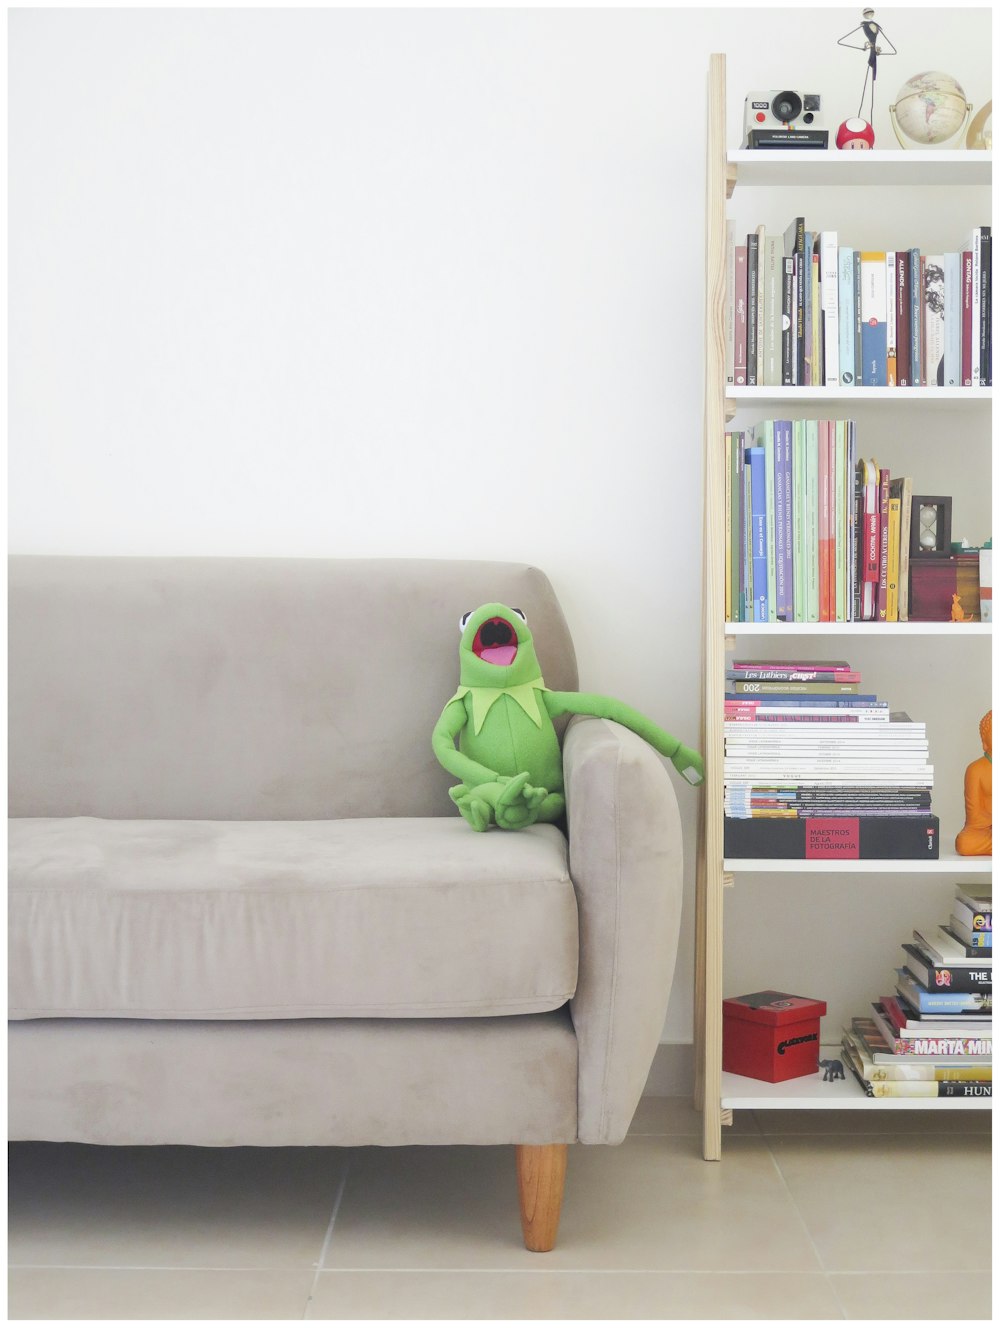 Il peluche dei Muppets Kermit sul divano grigio